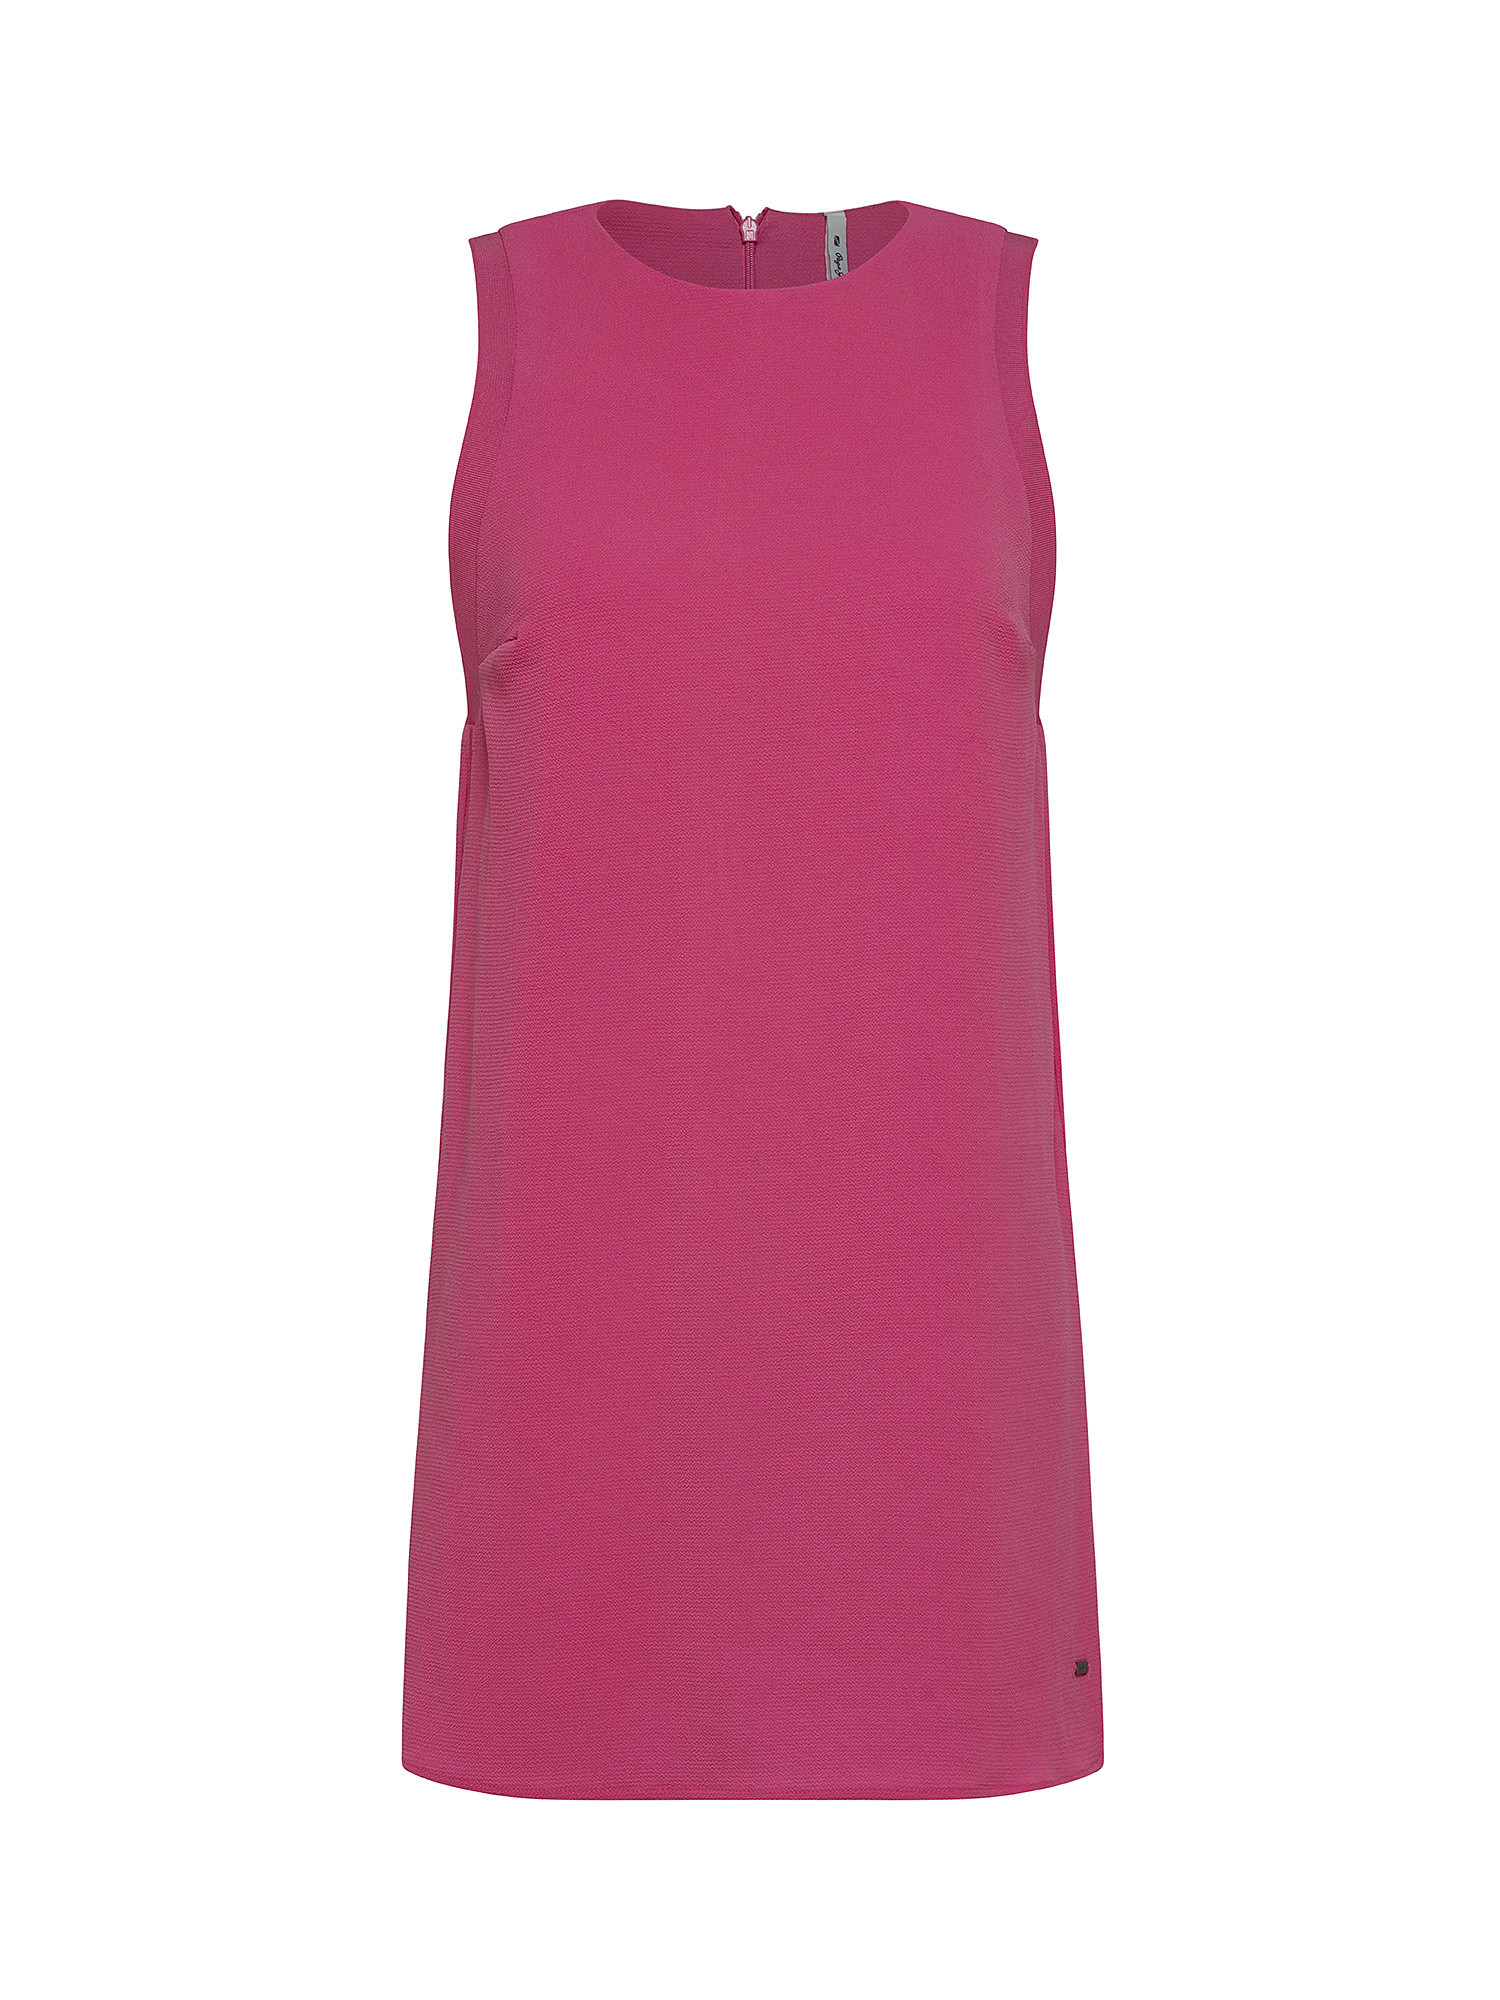 Ester short dress, Pink Flamingo, large image number 0